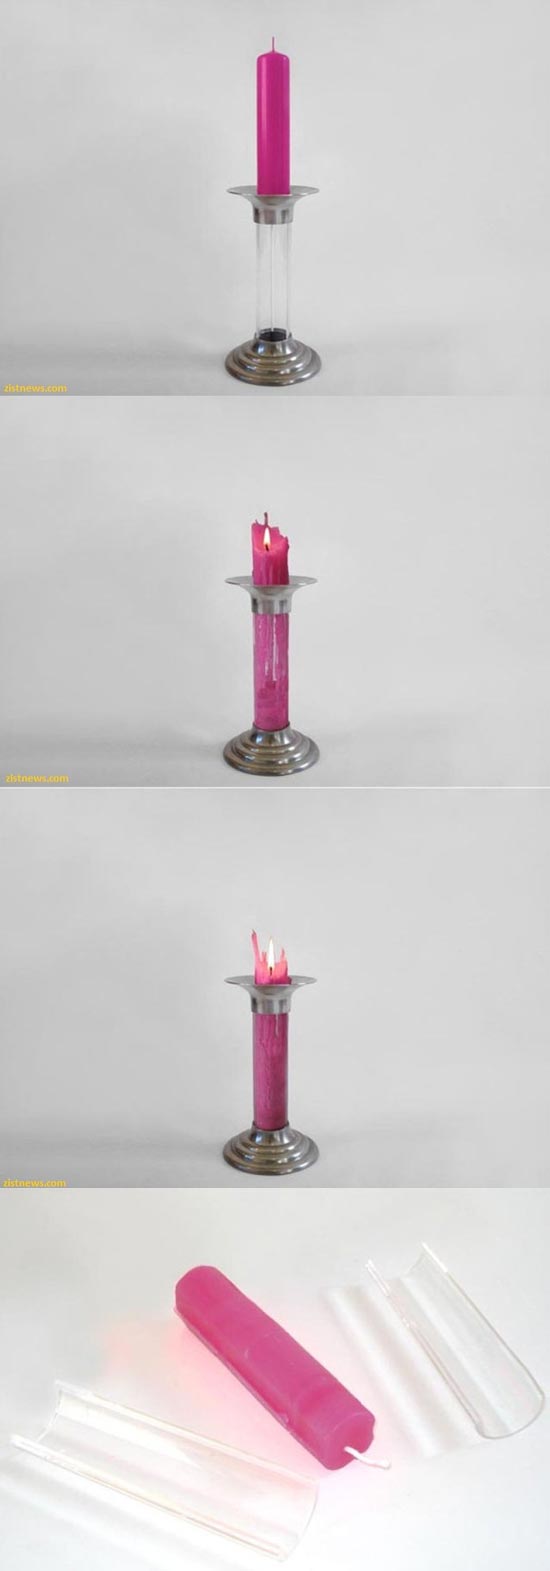 عکس: شمعی که تمام نمی شود!